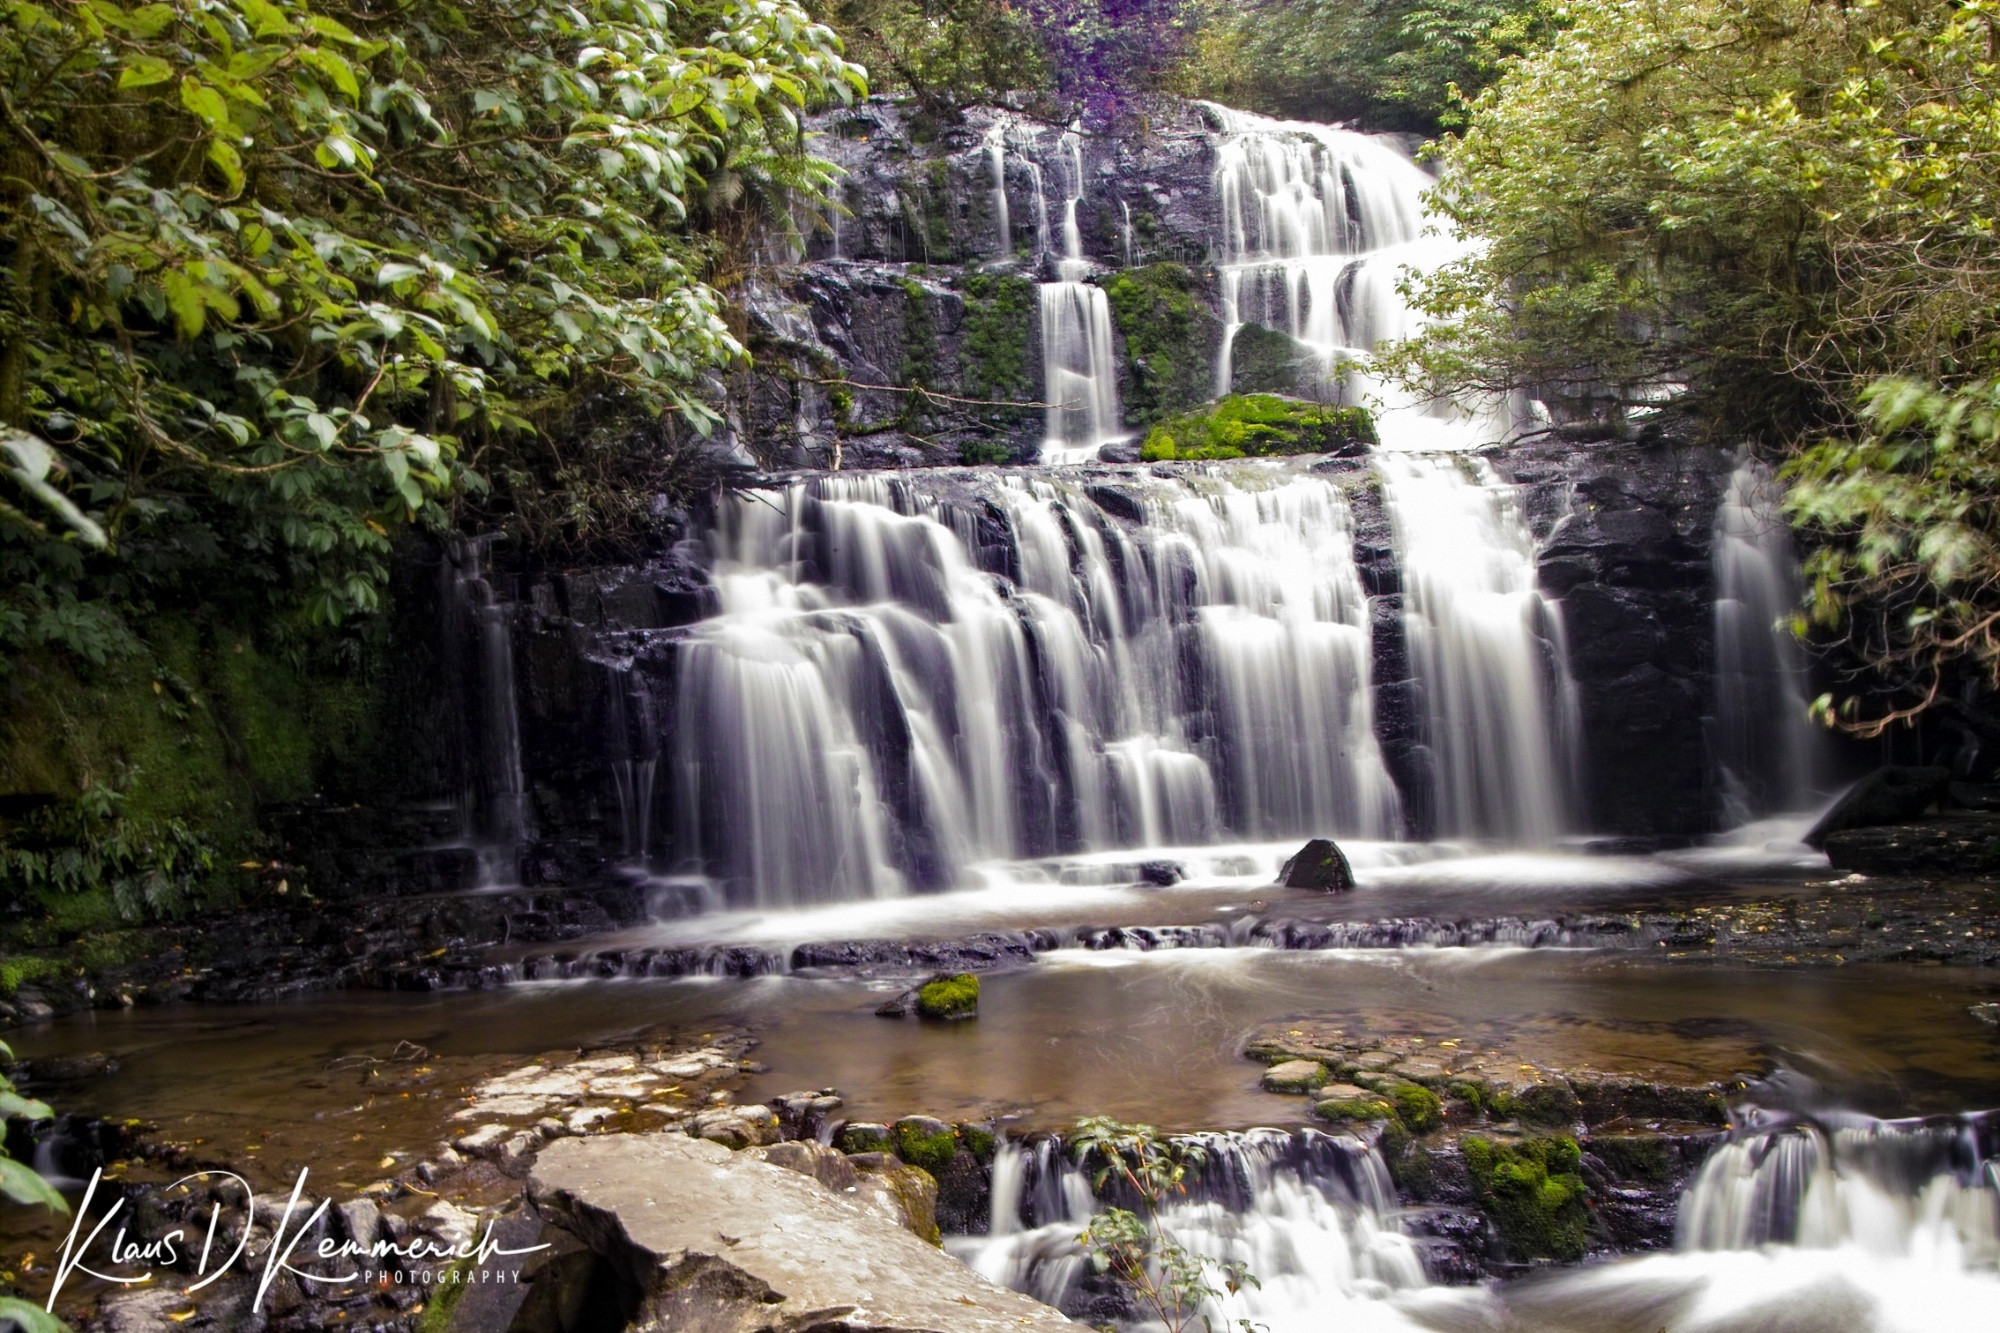 Purakanui Falls, New Zealand